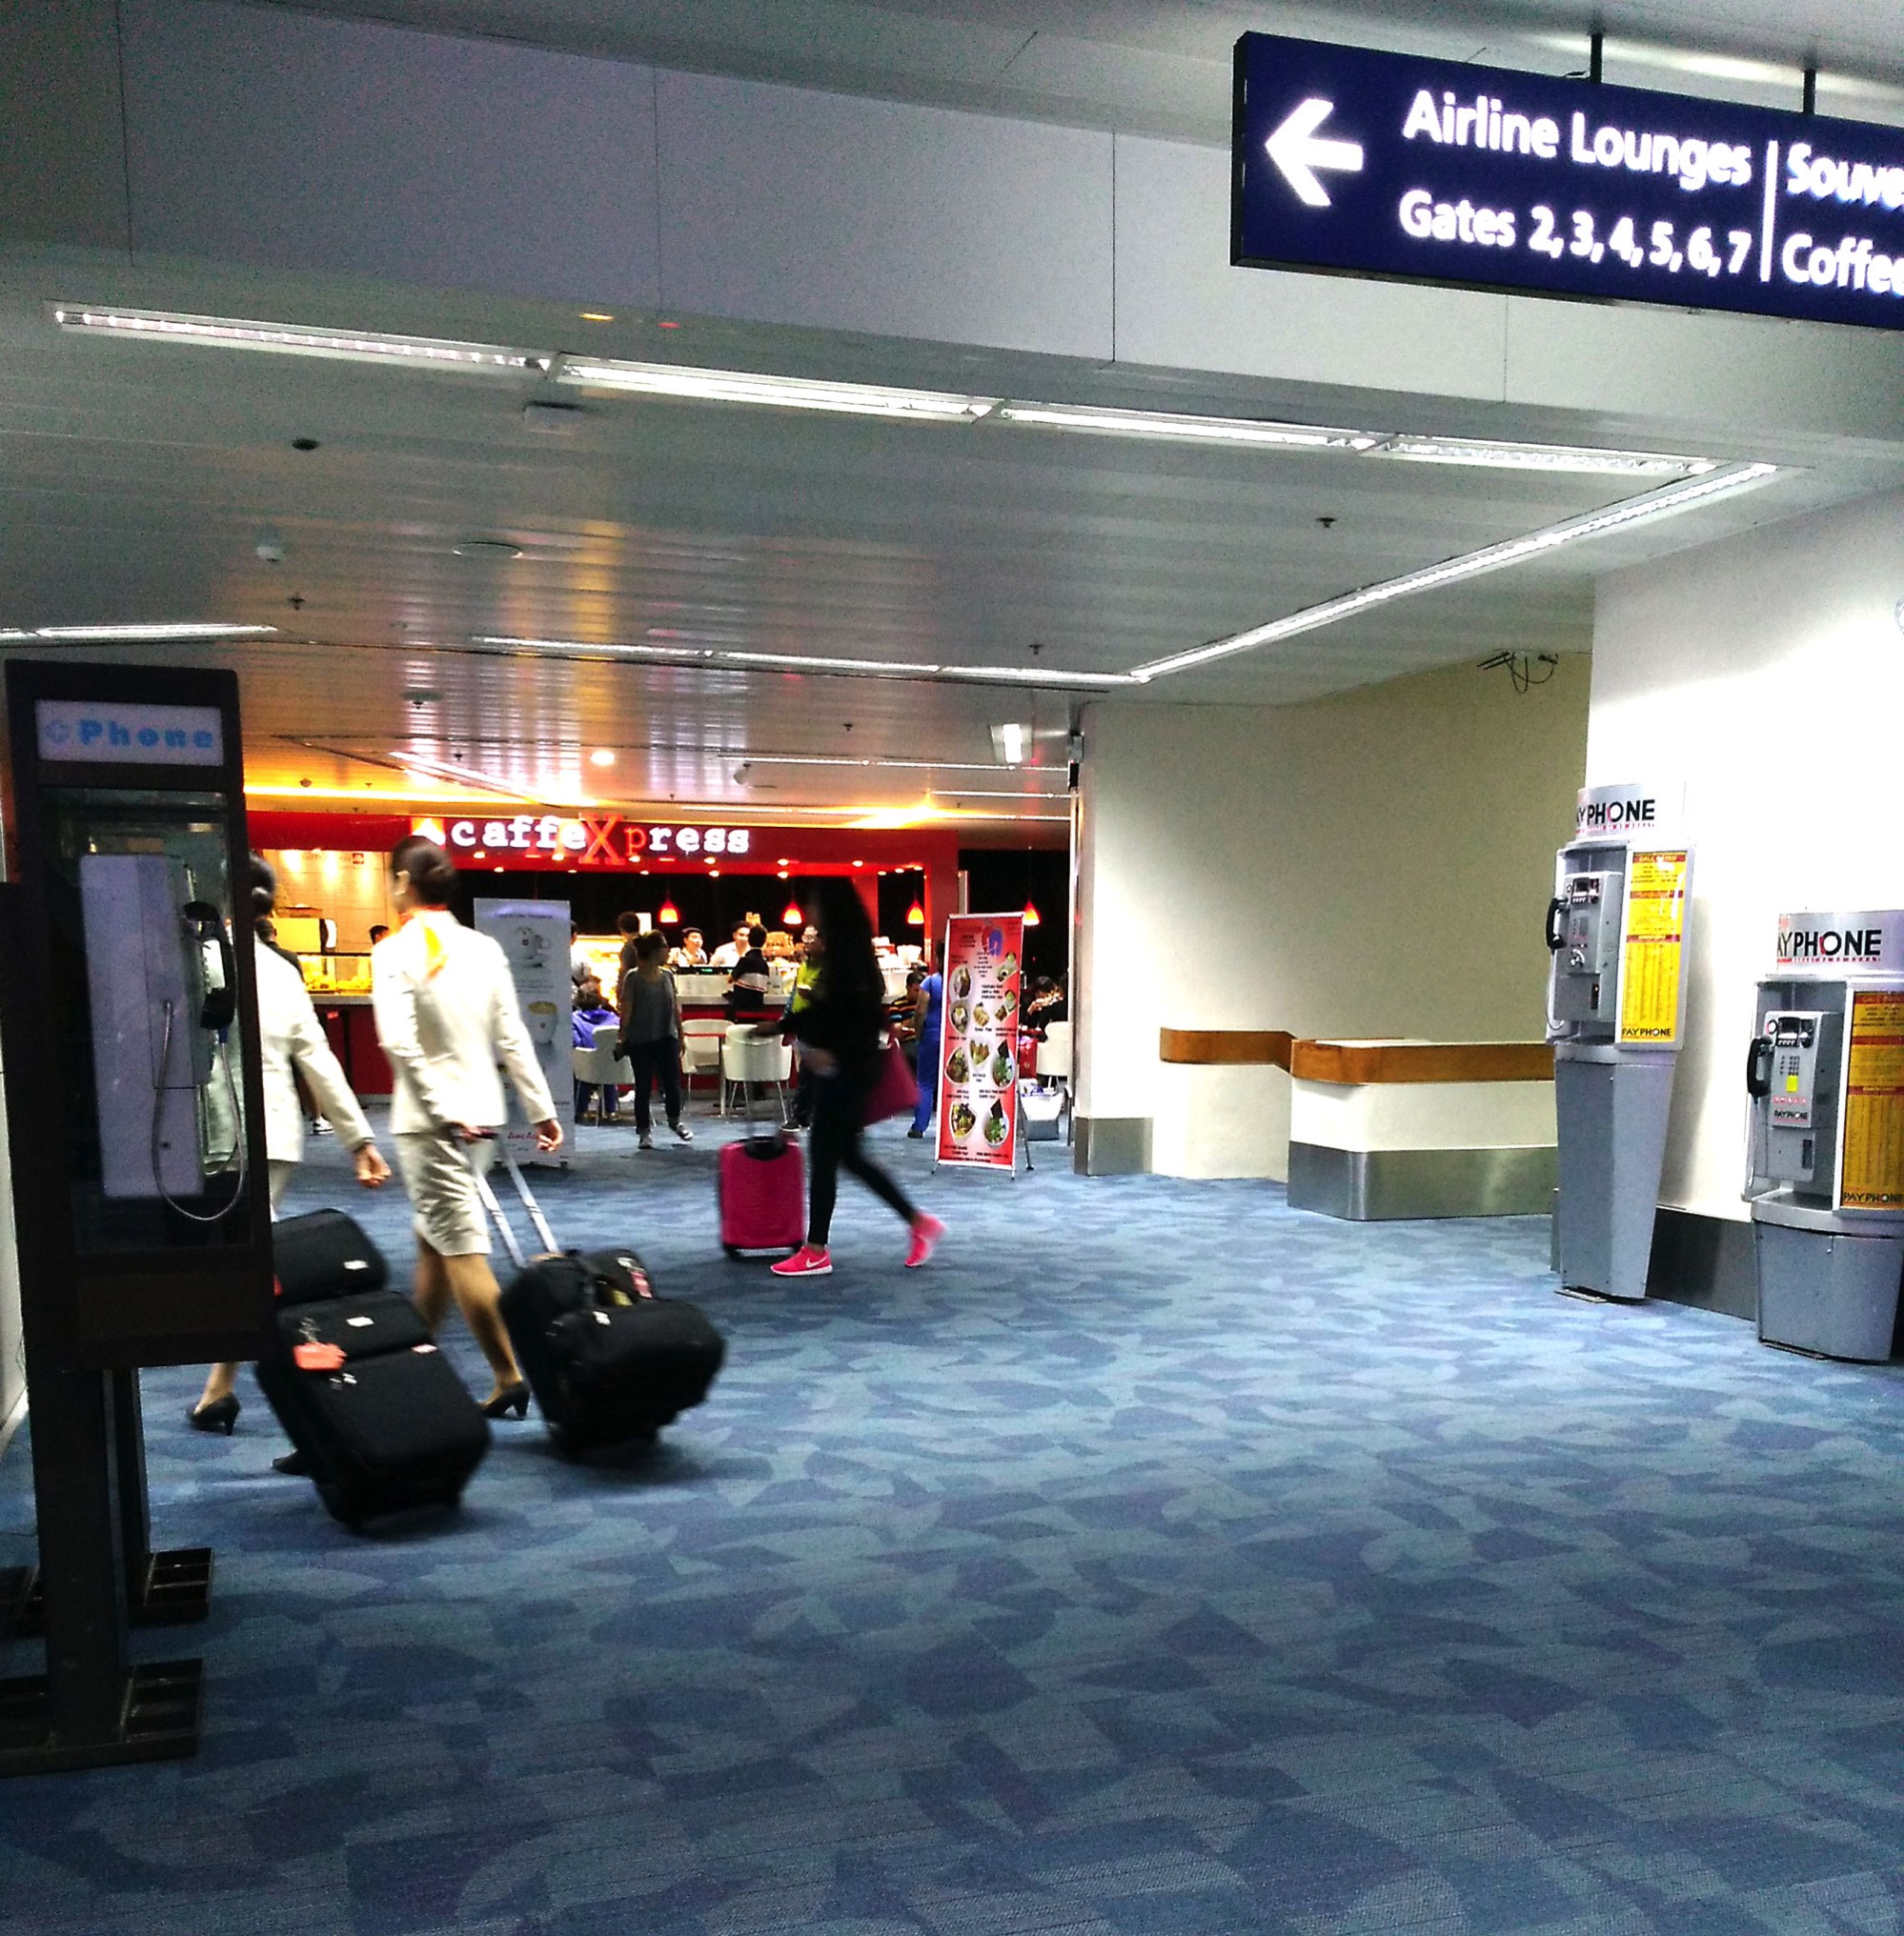 マニラ国際空港